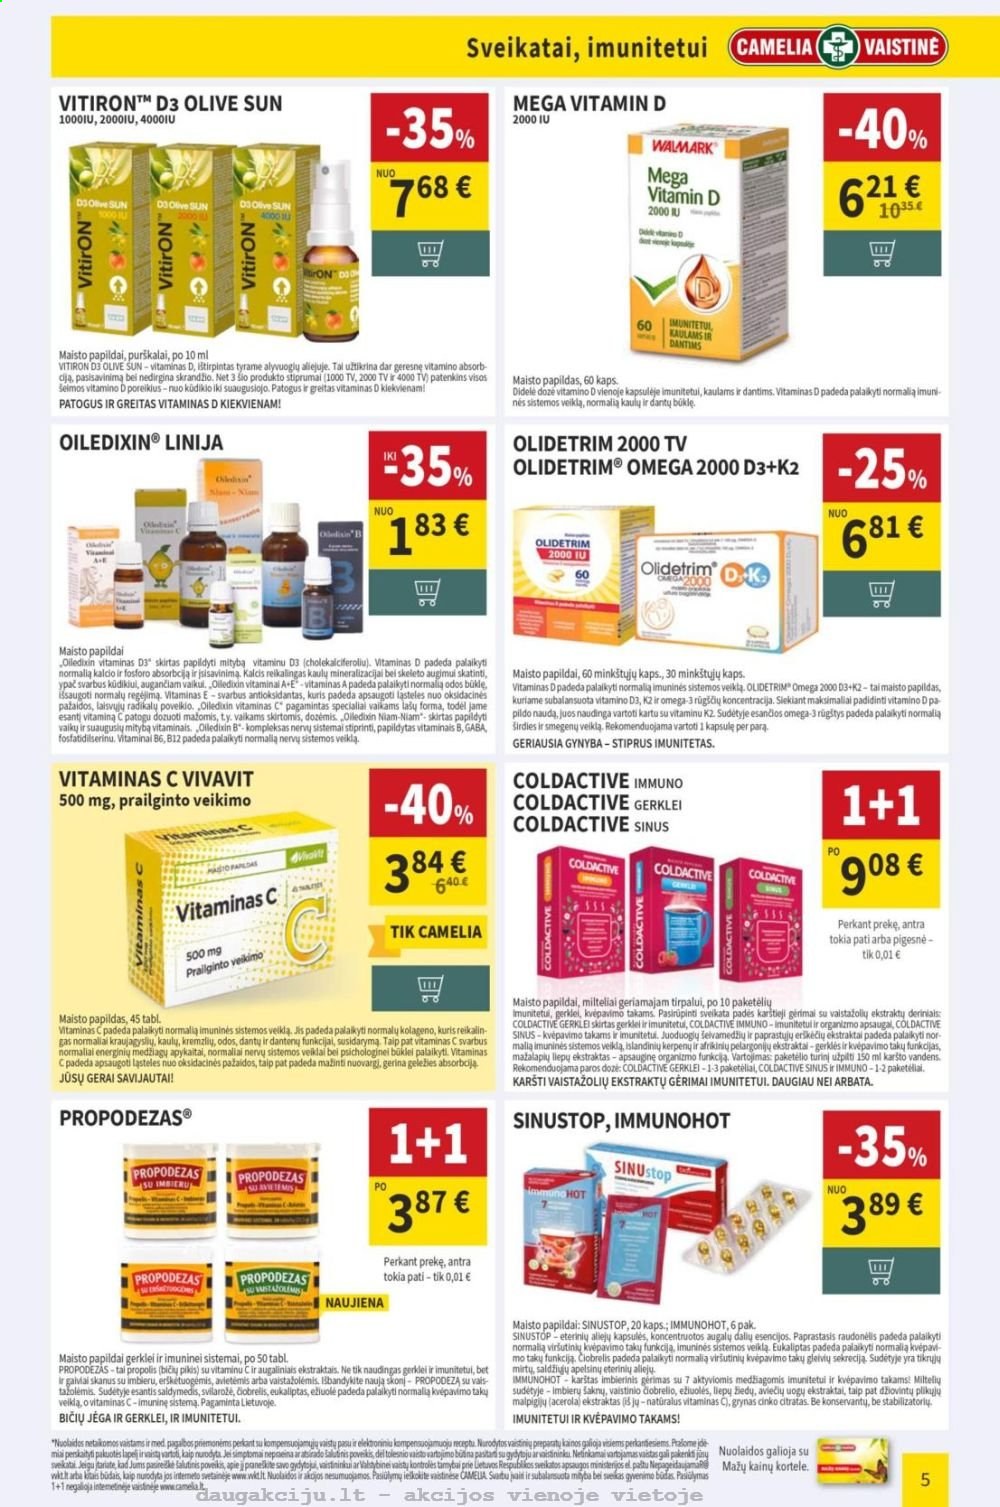 thumbnail - „CAMELIA Vaistinė“ leidinys - 2021 01 04 - 2021 01 31 - Išpardavimų produktai - B12, maisto papildai, Mega Vitamin D, omega 3, Propolis, Vitiron, Walmark. 5 puslapis.